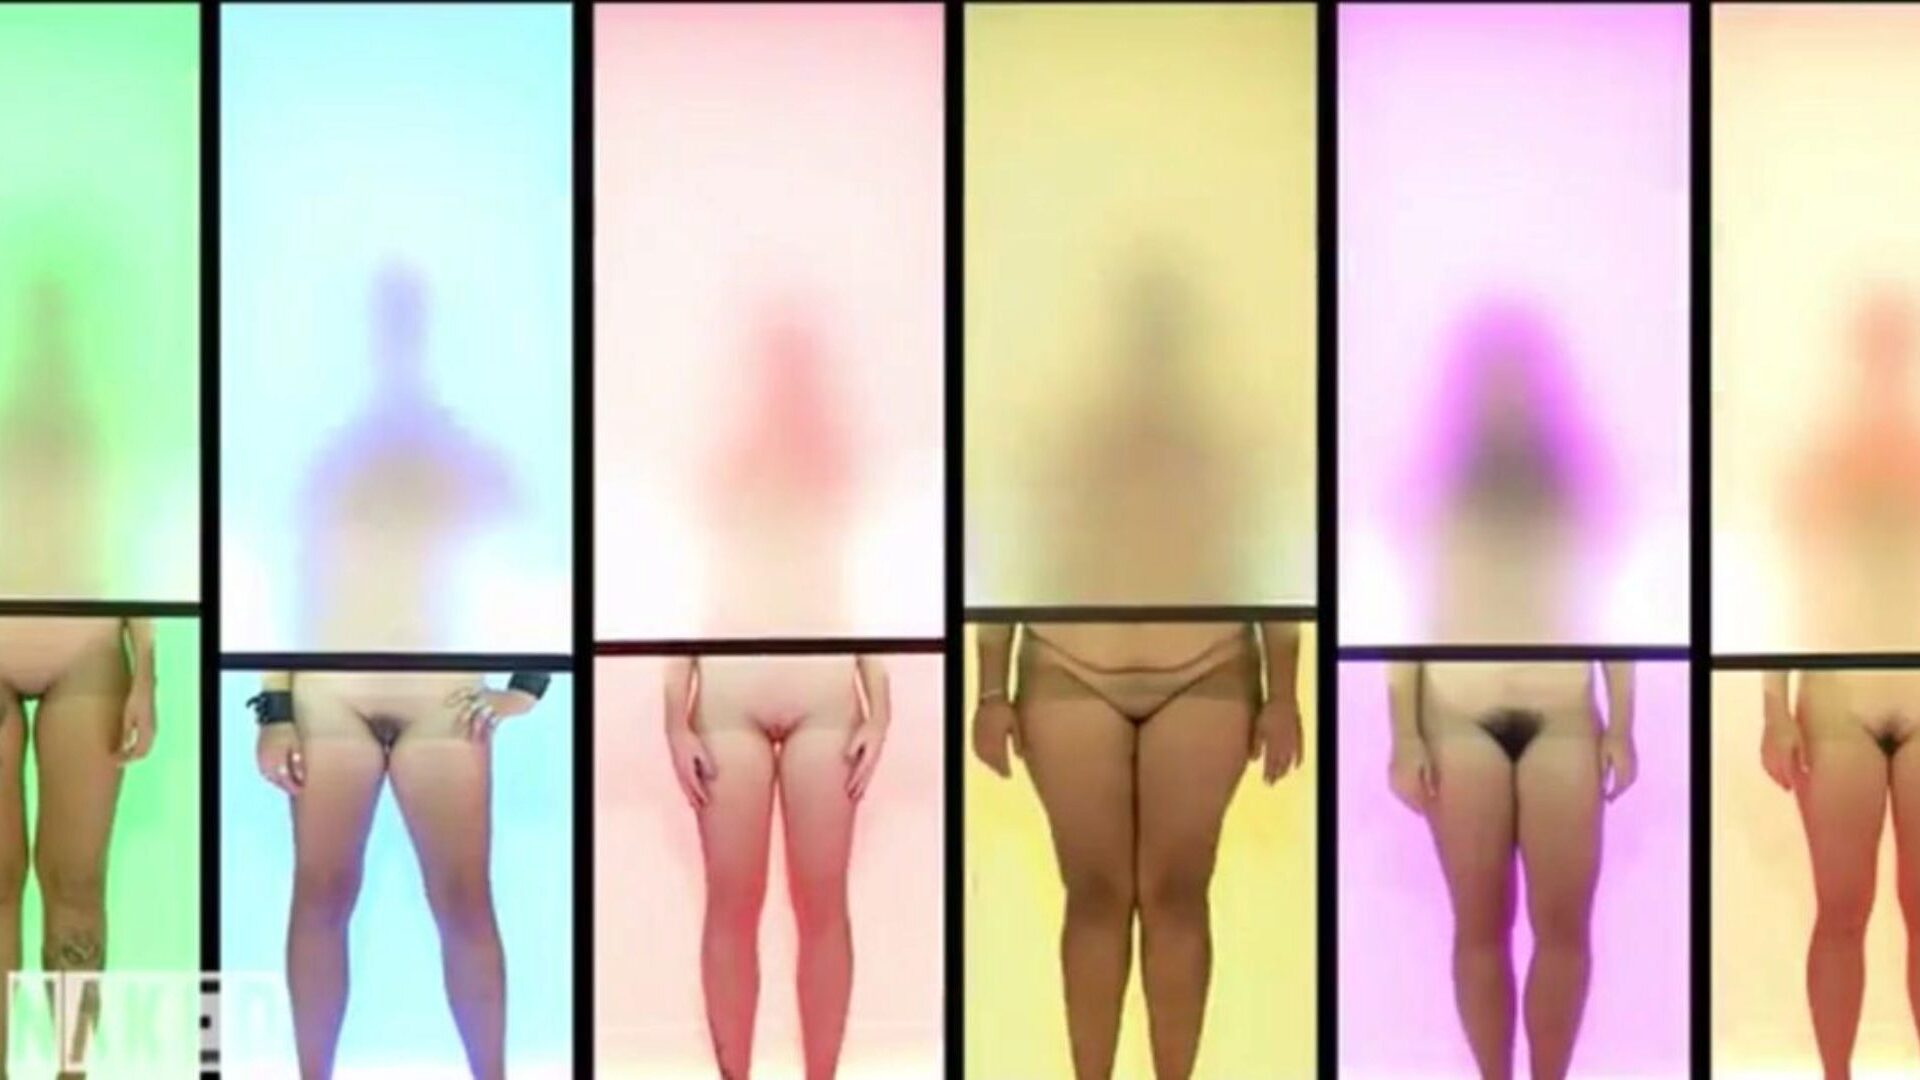 naken attraksjon tysk versjon klipp 7, porno c3: xhamster se naken tiltrekning tysk versjon klipp 7 film på xhamster, den mest utmerkede hd fuckfest tube nettstedet med tonnevis av gratis tyskere naken tysk & naken porno klipp